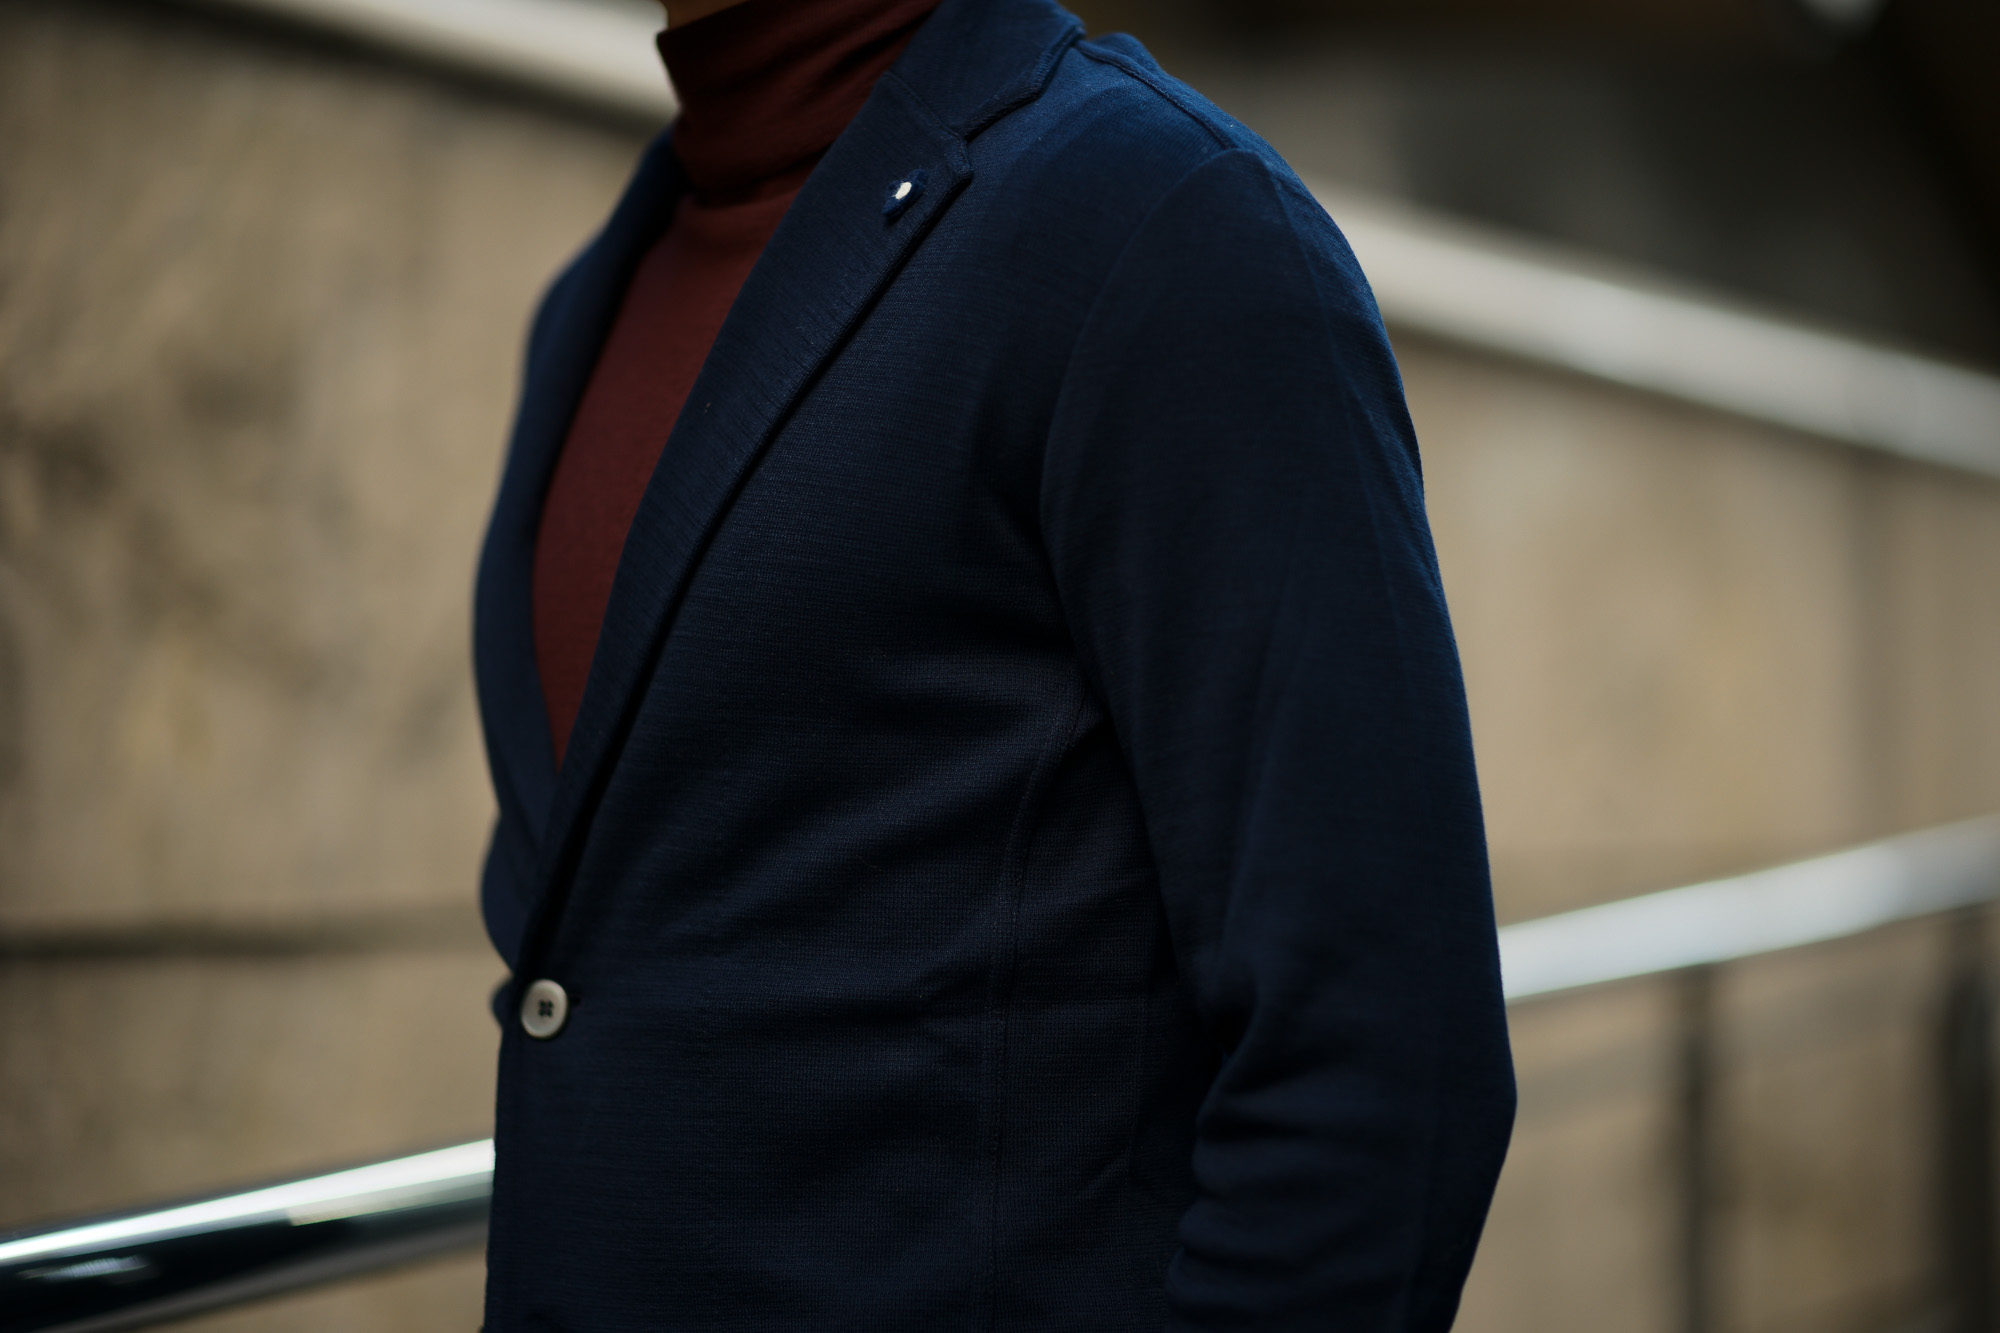 LARDINI (ラルディーニ) Milano Rib Knit Jacket (ミラノリブ ニット ジャケット) コットン ミラノリブ 2B ニットジャケット NAVY (ネイビー・850) Made in italy (イタリア製) 2019 春夏新作 愛知 名古屋 alto e diritto アルトエデリット